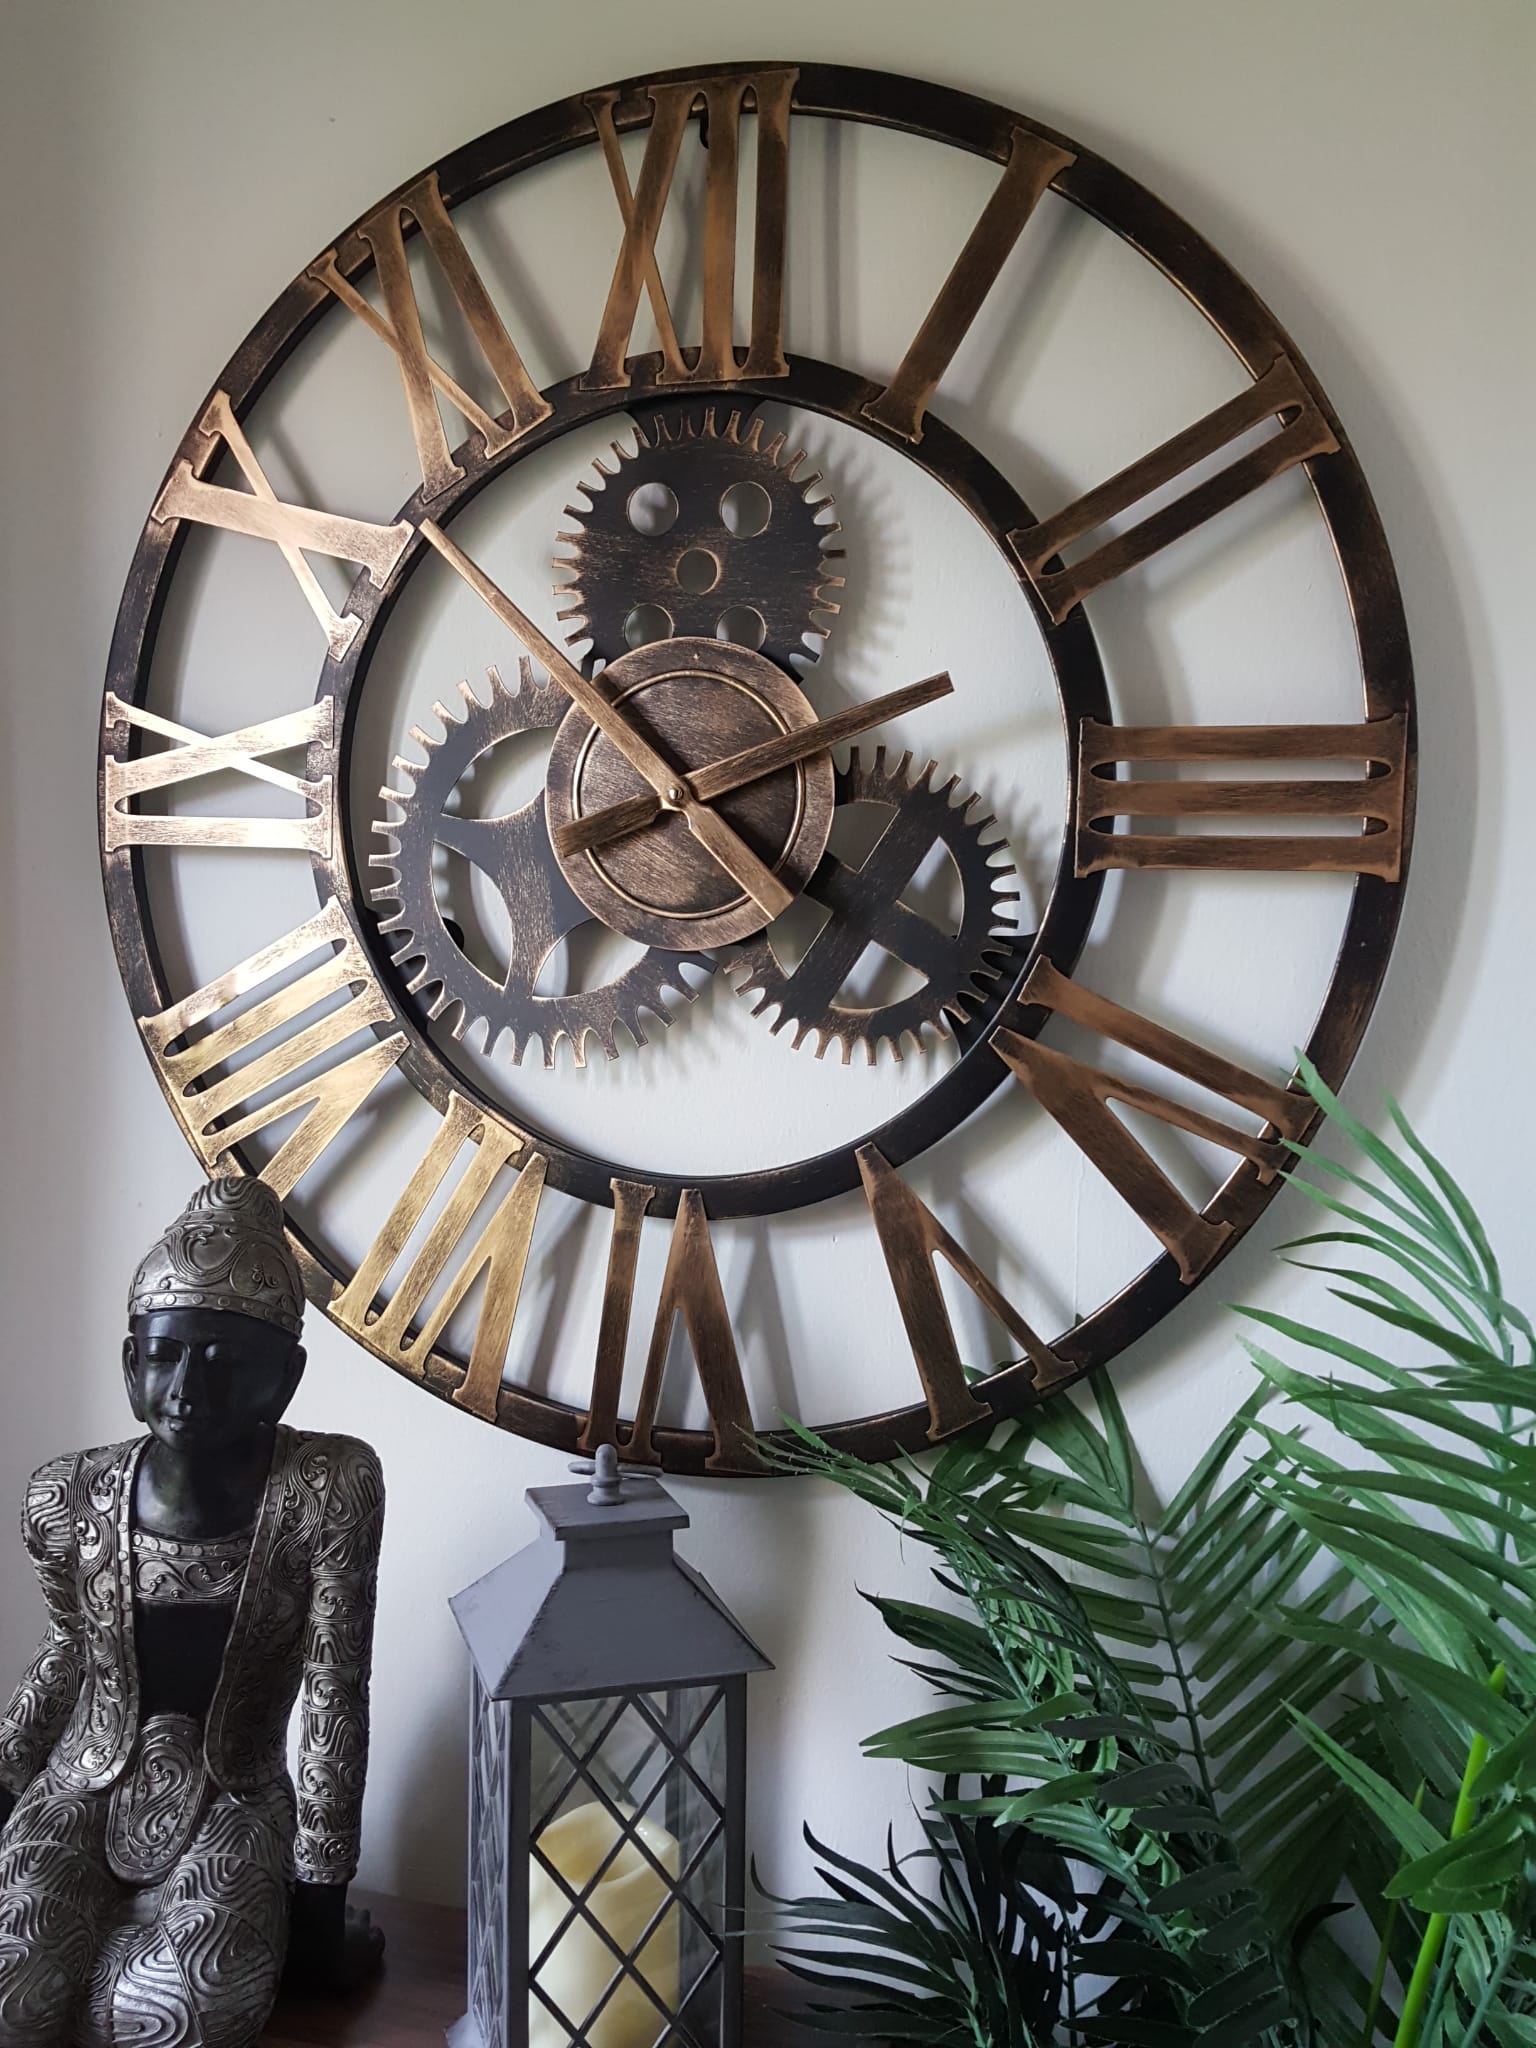 76cm - 100% Metal Large Skeleton Gear Wall Clock - Rustic Gold - Industrial Mechanical Look